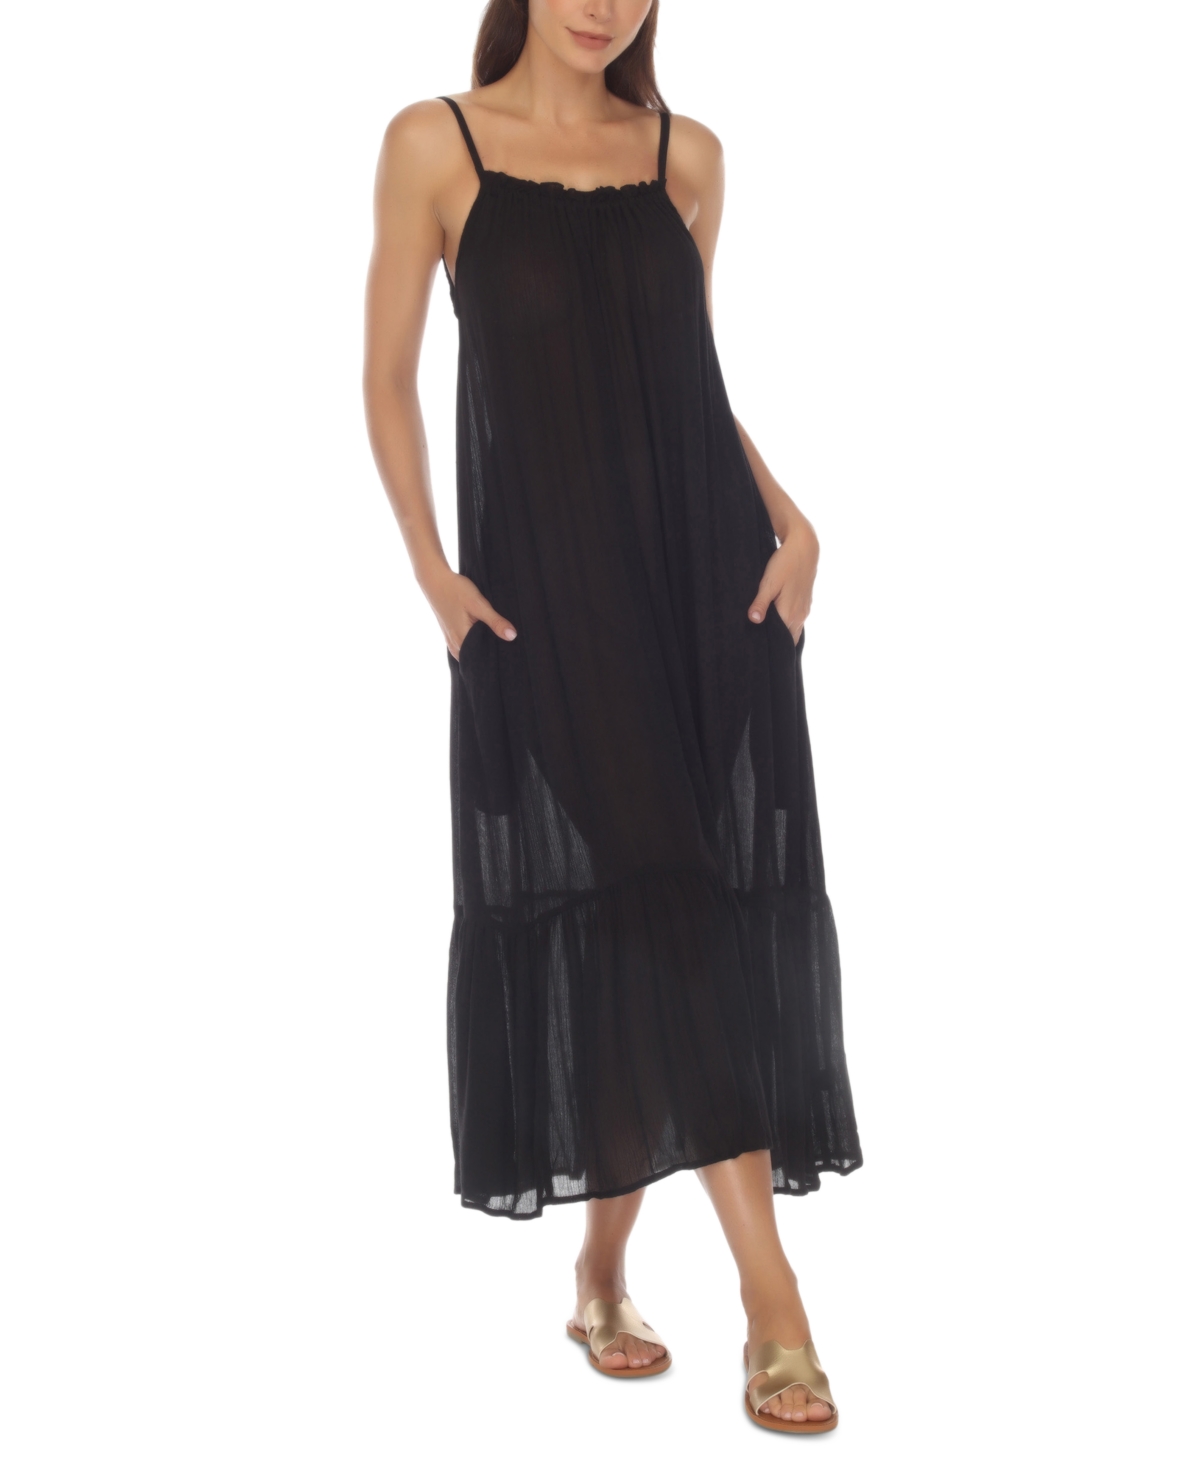 Women's Ruffle-Trim Maxi Dress Cover-Up - Black